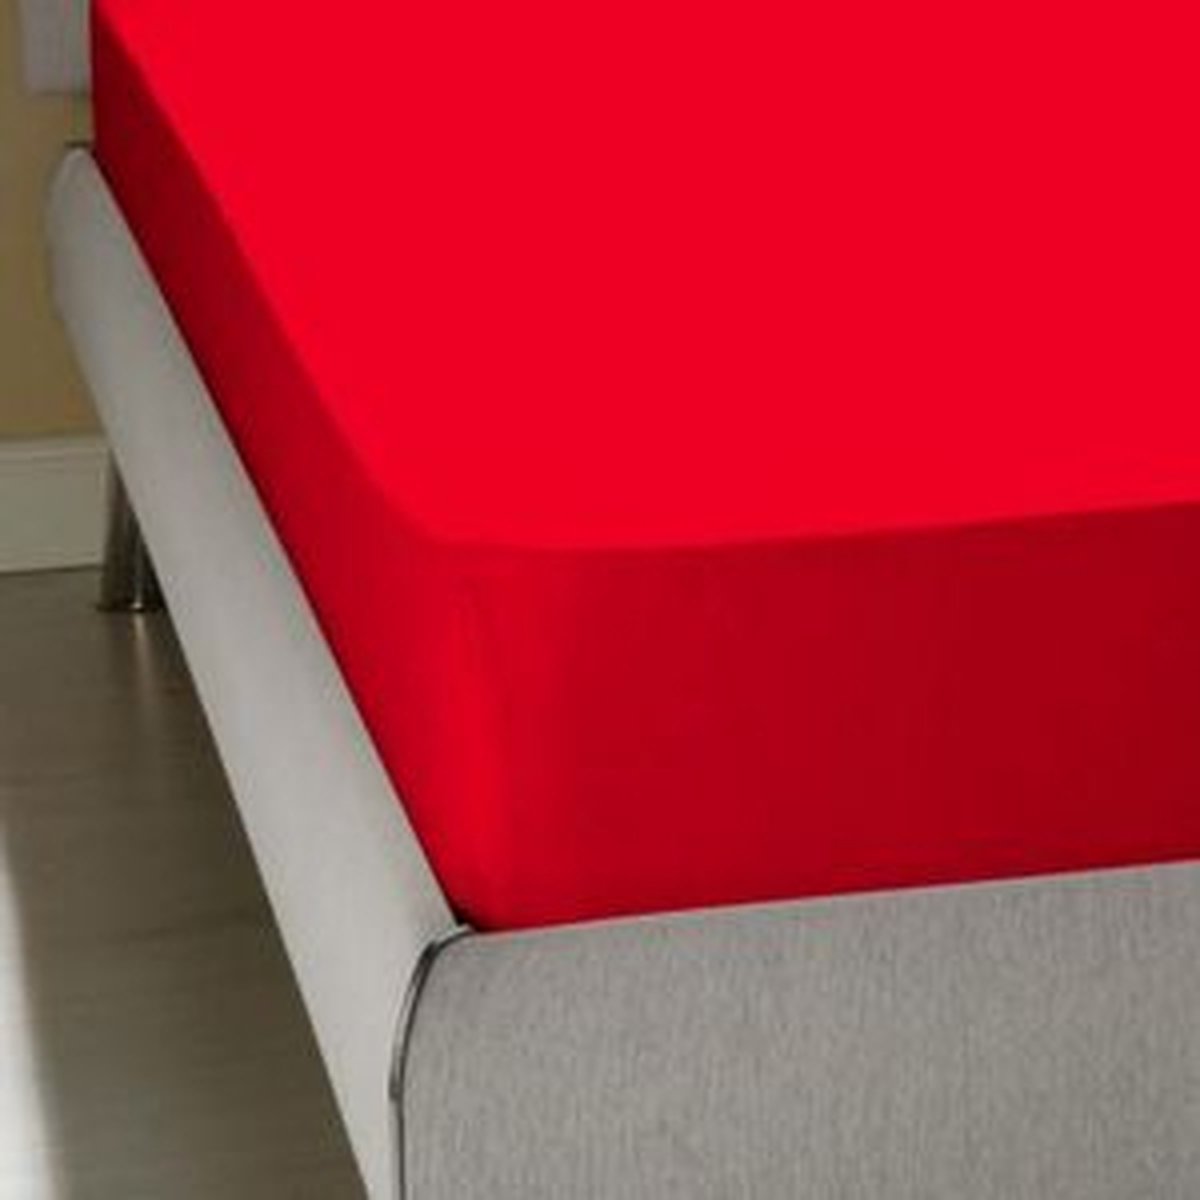 Homéé® Homee Hoeslaken Jersey stretch rood 80 90x200 220+ 30cm eenpersoons bed 100% katoen